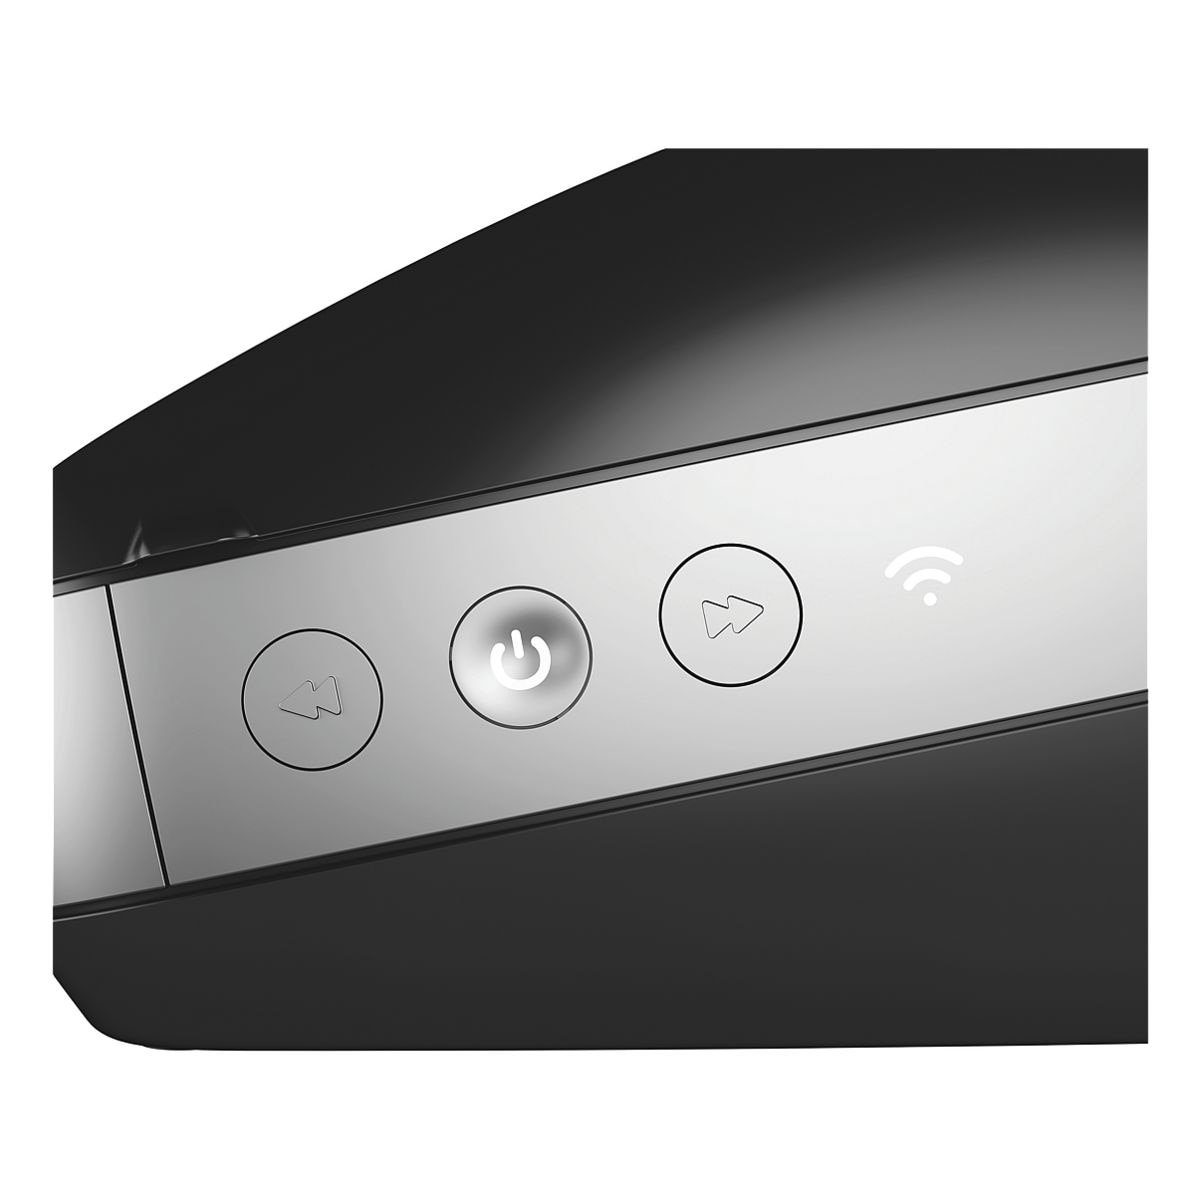 DYMO LabelWriter Wireless mobiler Drucker, Wi-Fi) (für im Thermo-Direktdruck, Etiketten